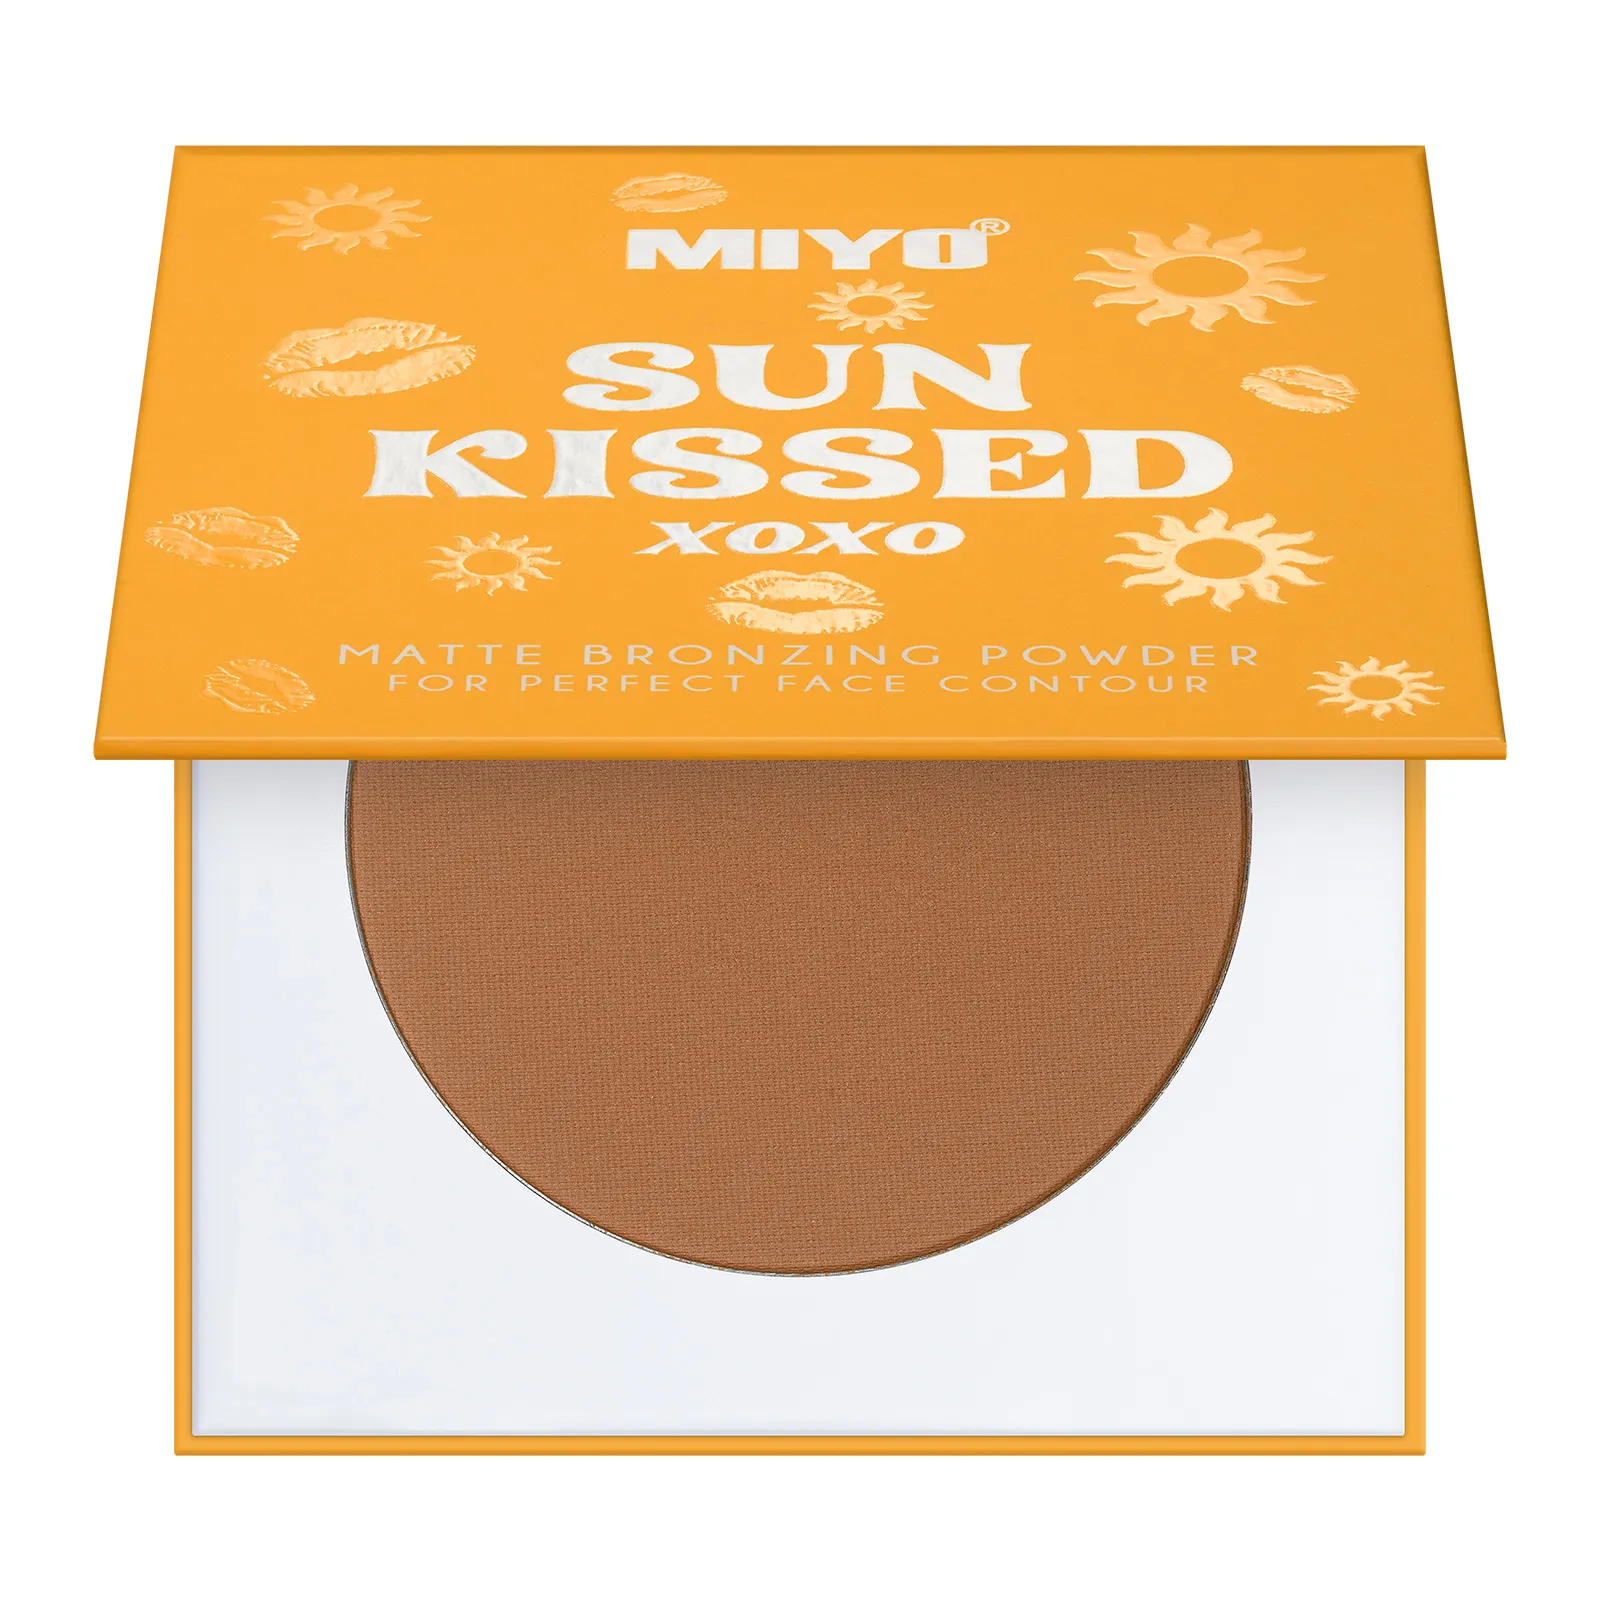 MIYO Sun Kissed Powder puder do twarzy brązujący no. 01 Warm Bronze, 10 g